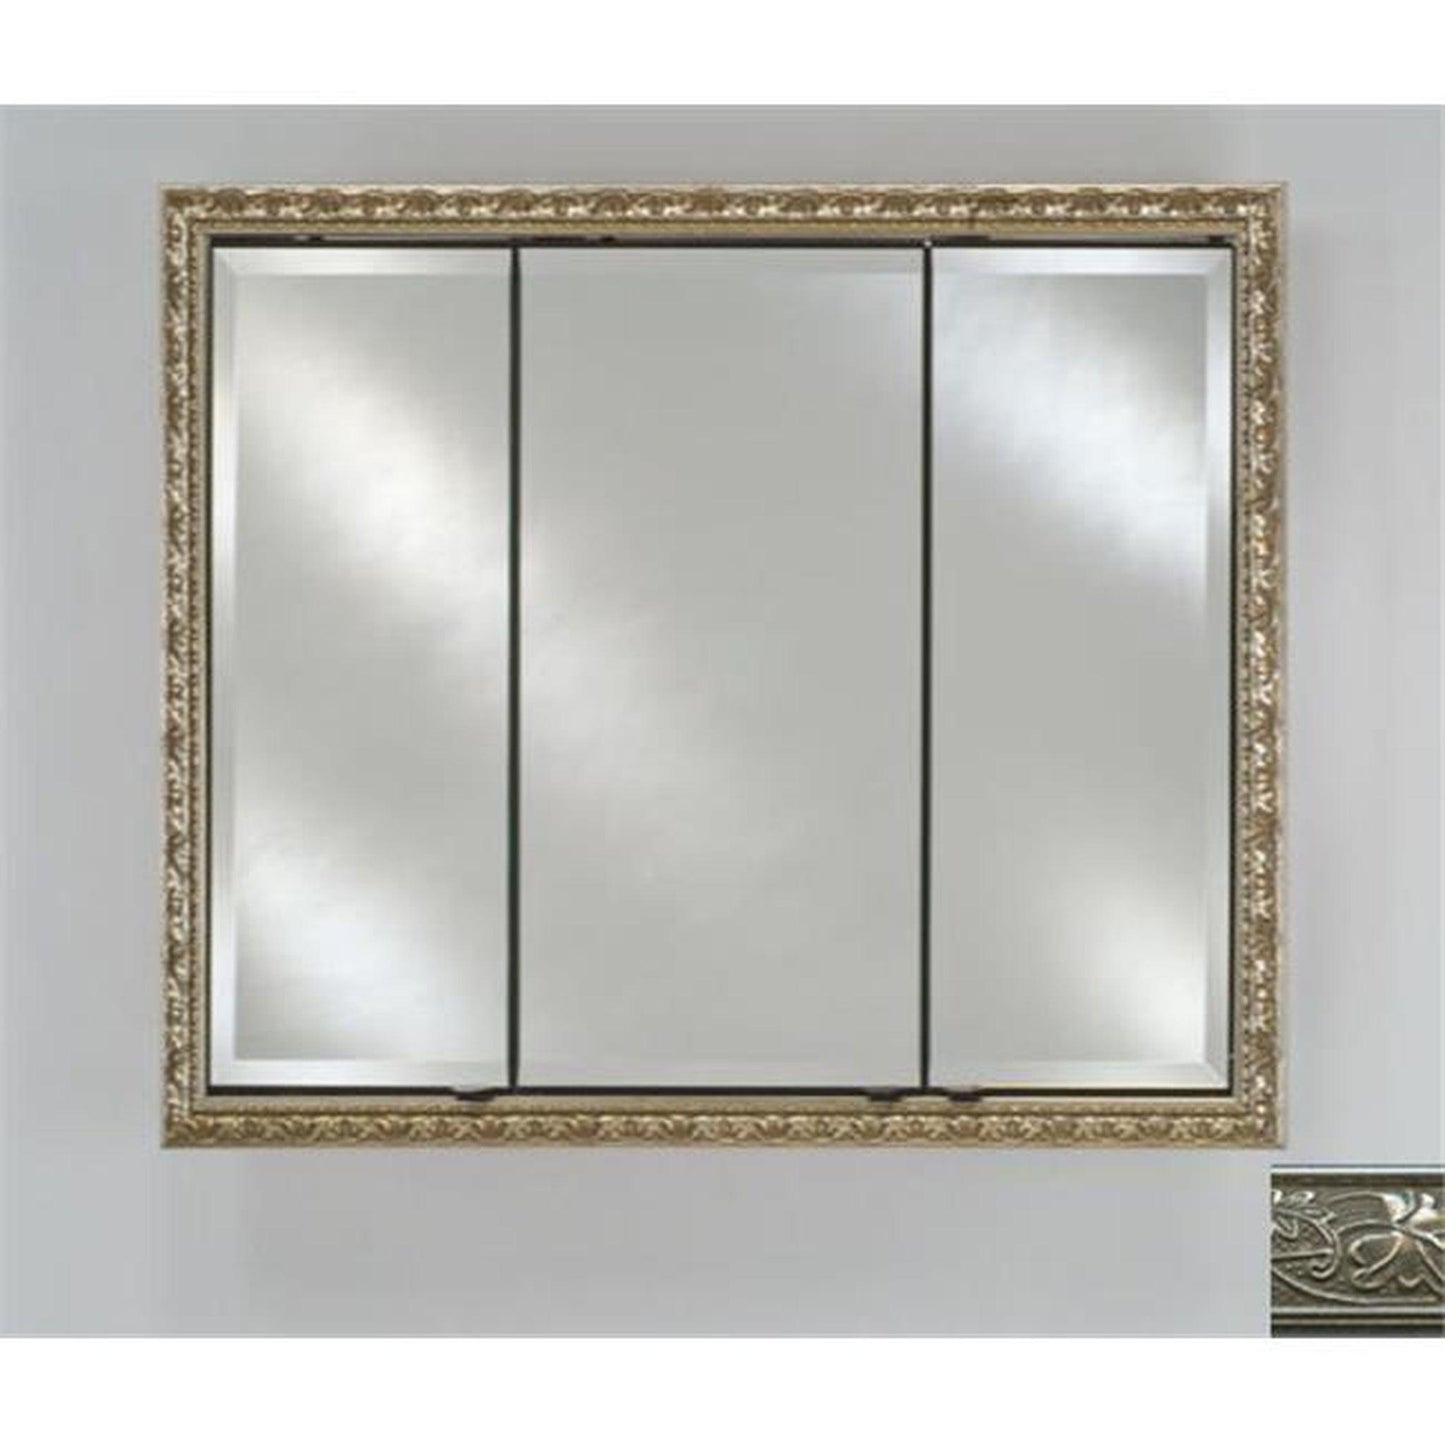 Afina Signature 44" x 30" Aristocrat Antique Silver Recessed Triple Door Medicine Cabinet With Beveled Edge Mirror